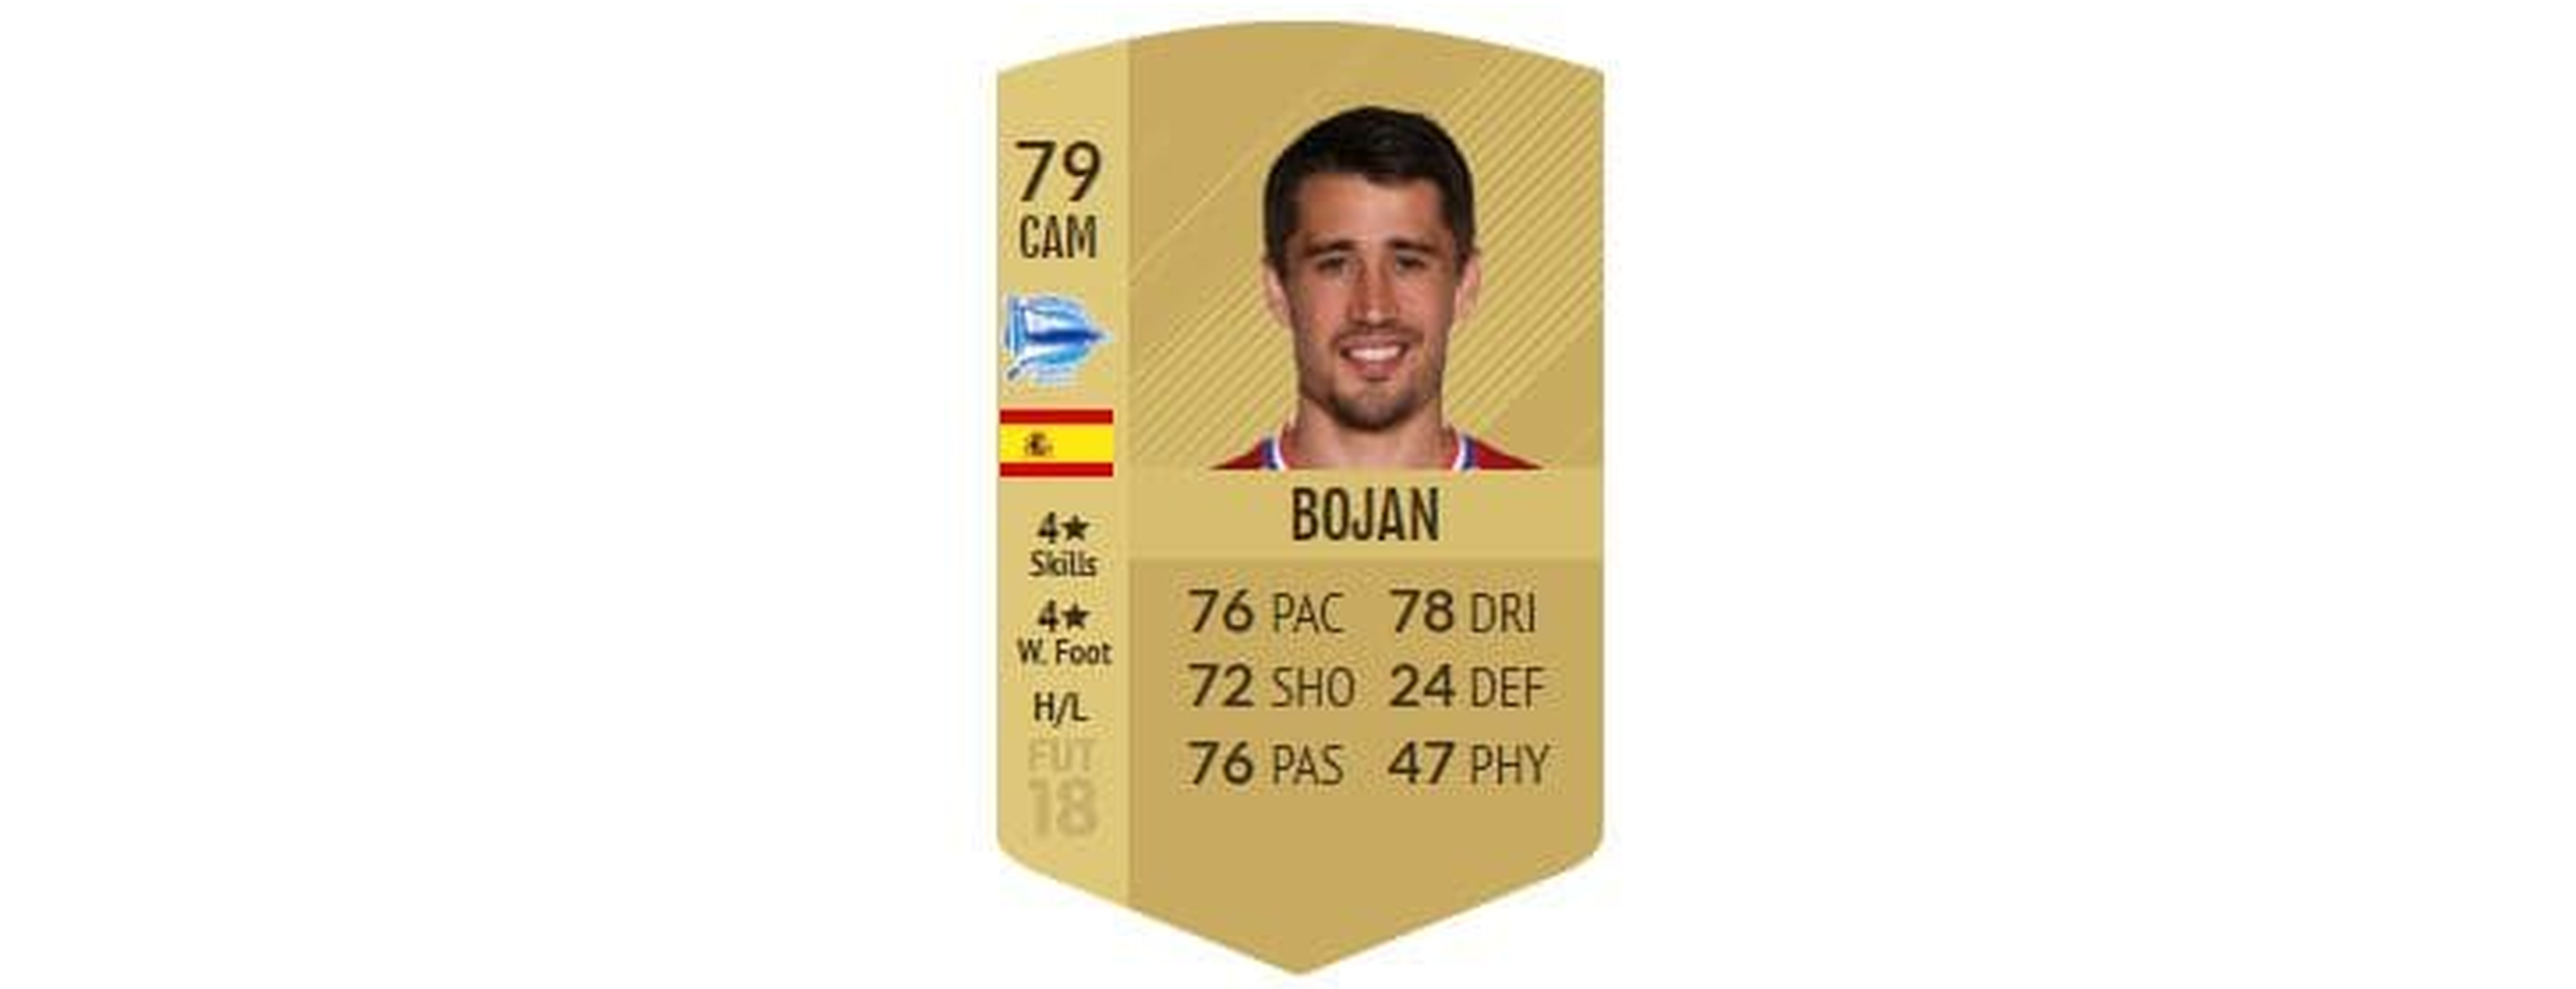 FIFA 18 - Bojan